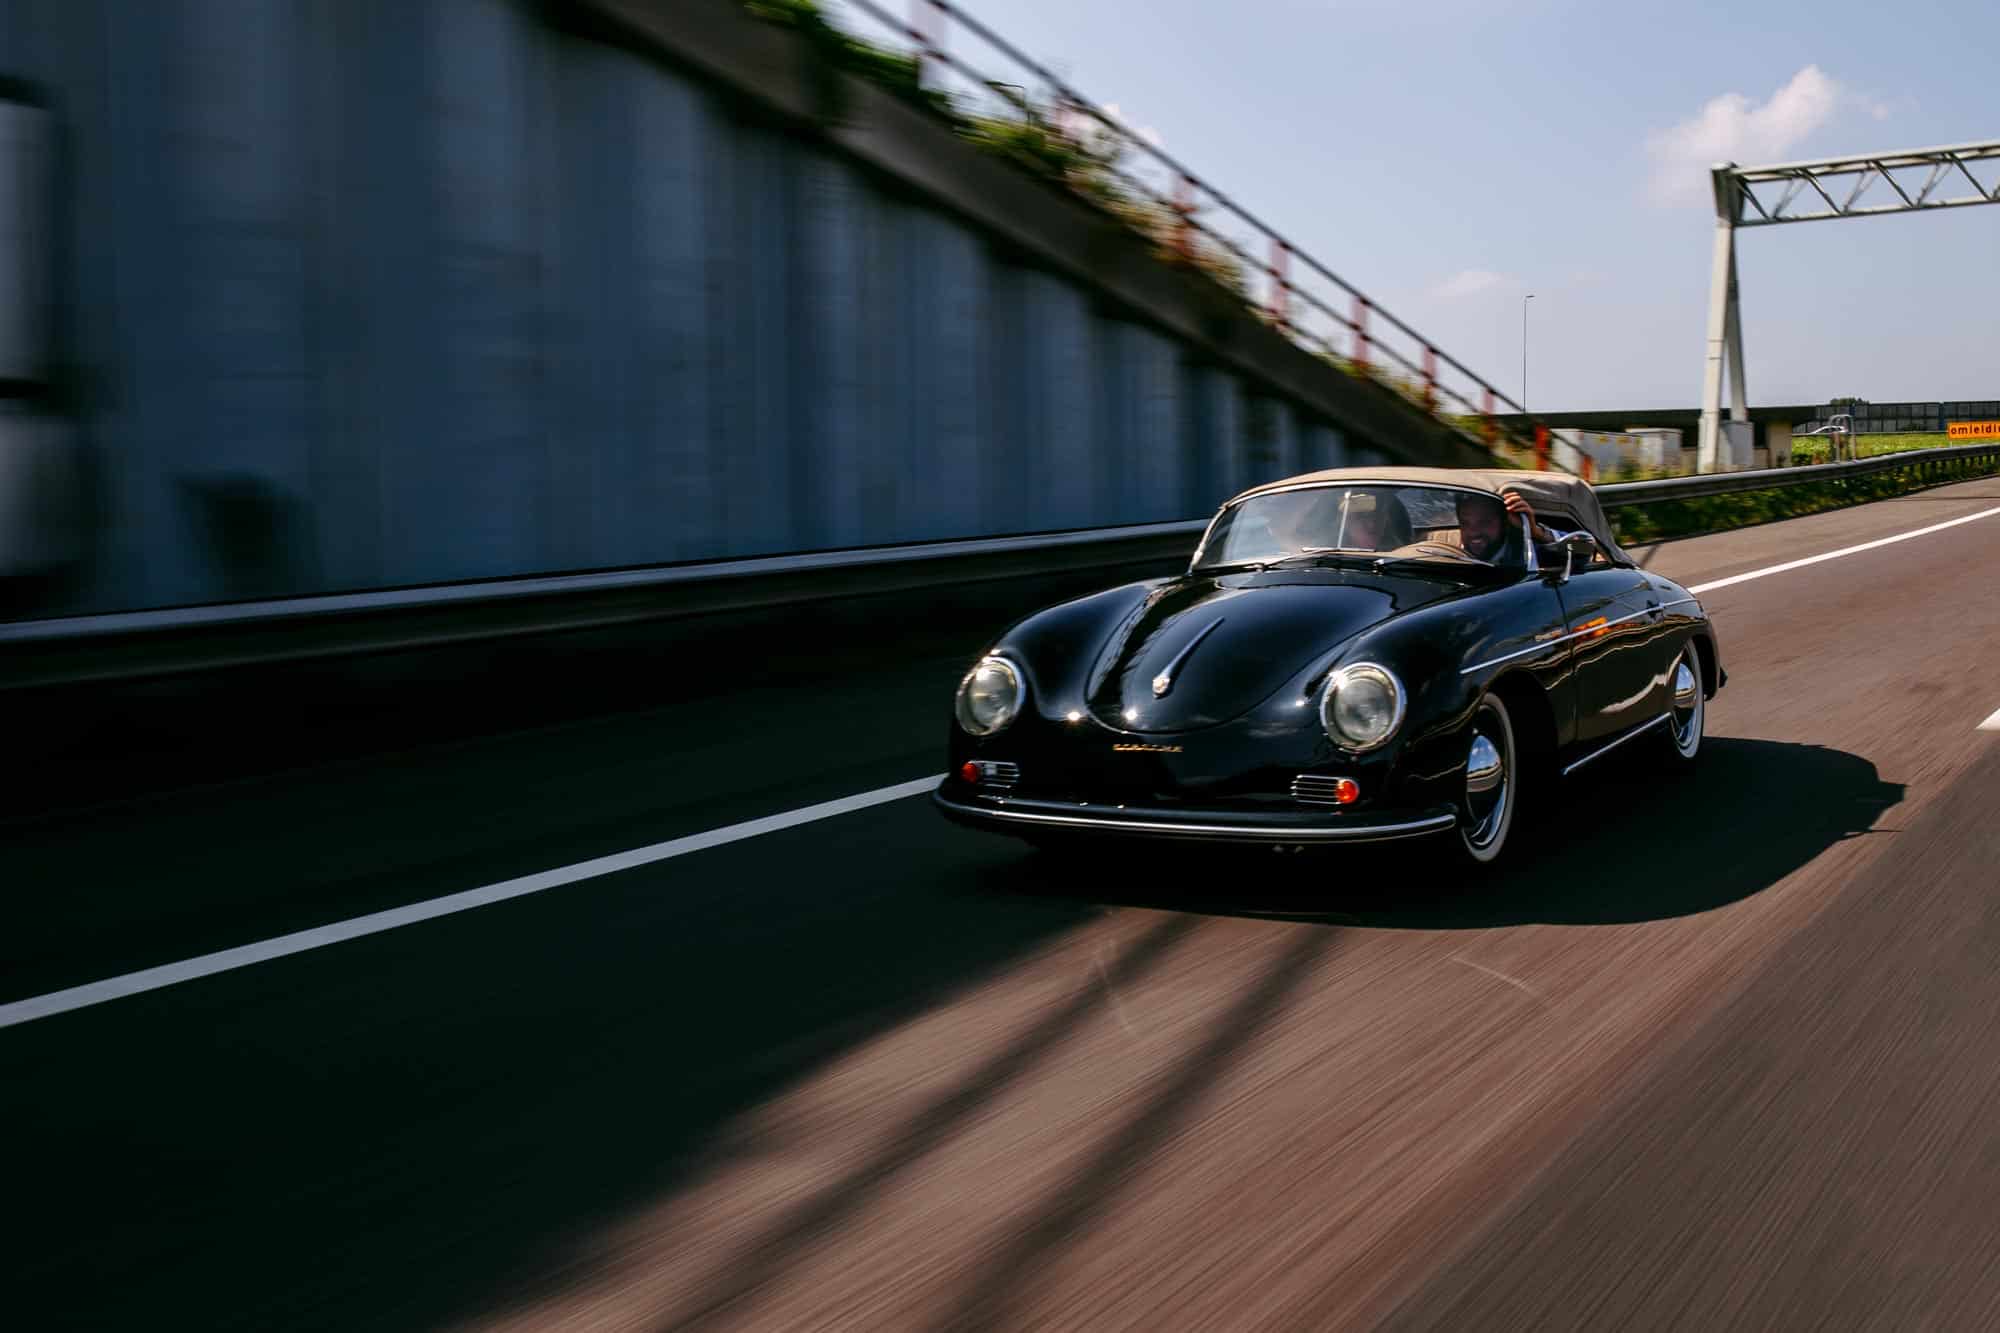 Een zwarte Porsche 356 speedster die over de snelweg rijdt en bijzondere trouwfoto's maakt.